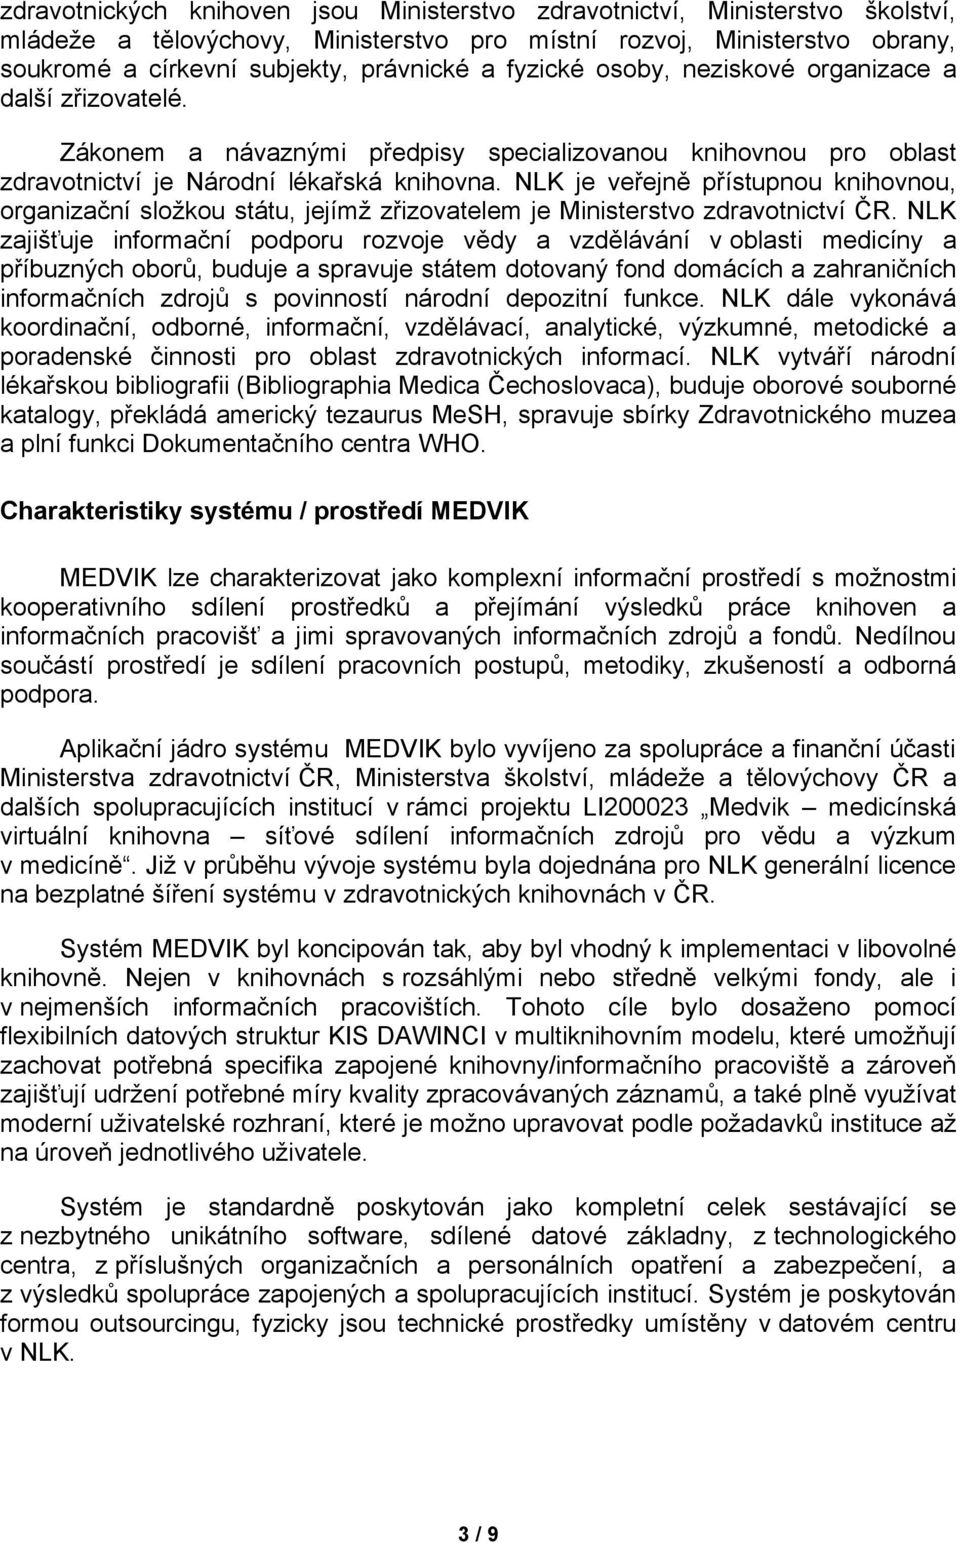 NLK je veřejně přístupnou knihovnou, organizační složkou státu, jejímž zřizovatelem je Ministerstvo zdravotnictví ČR.